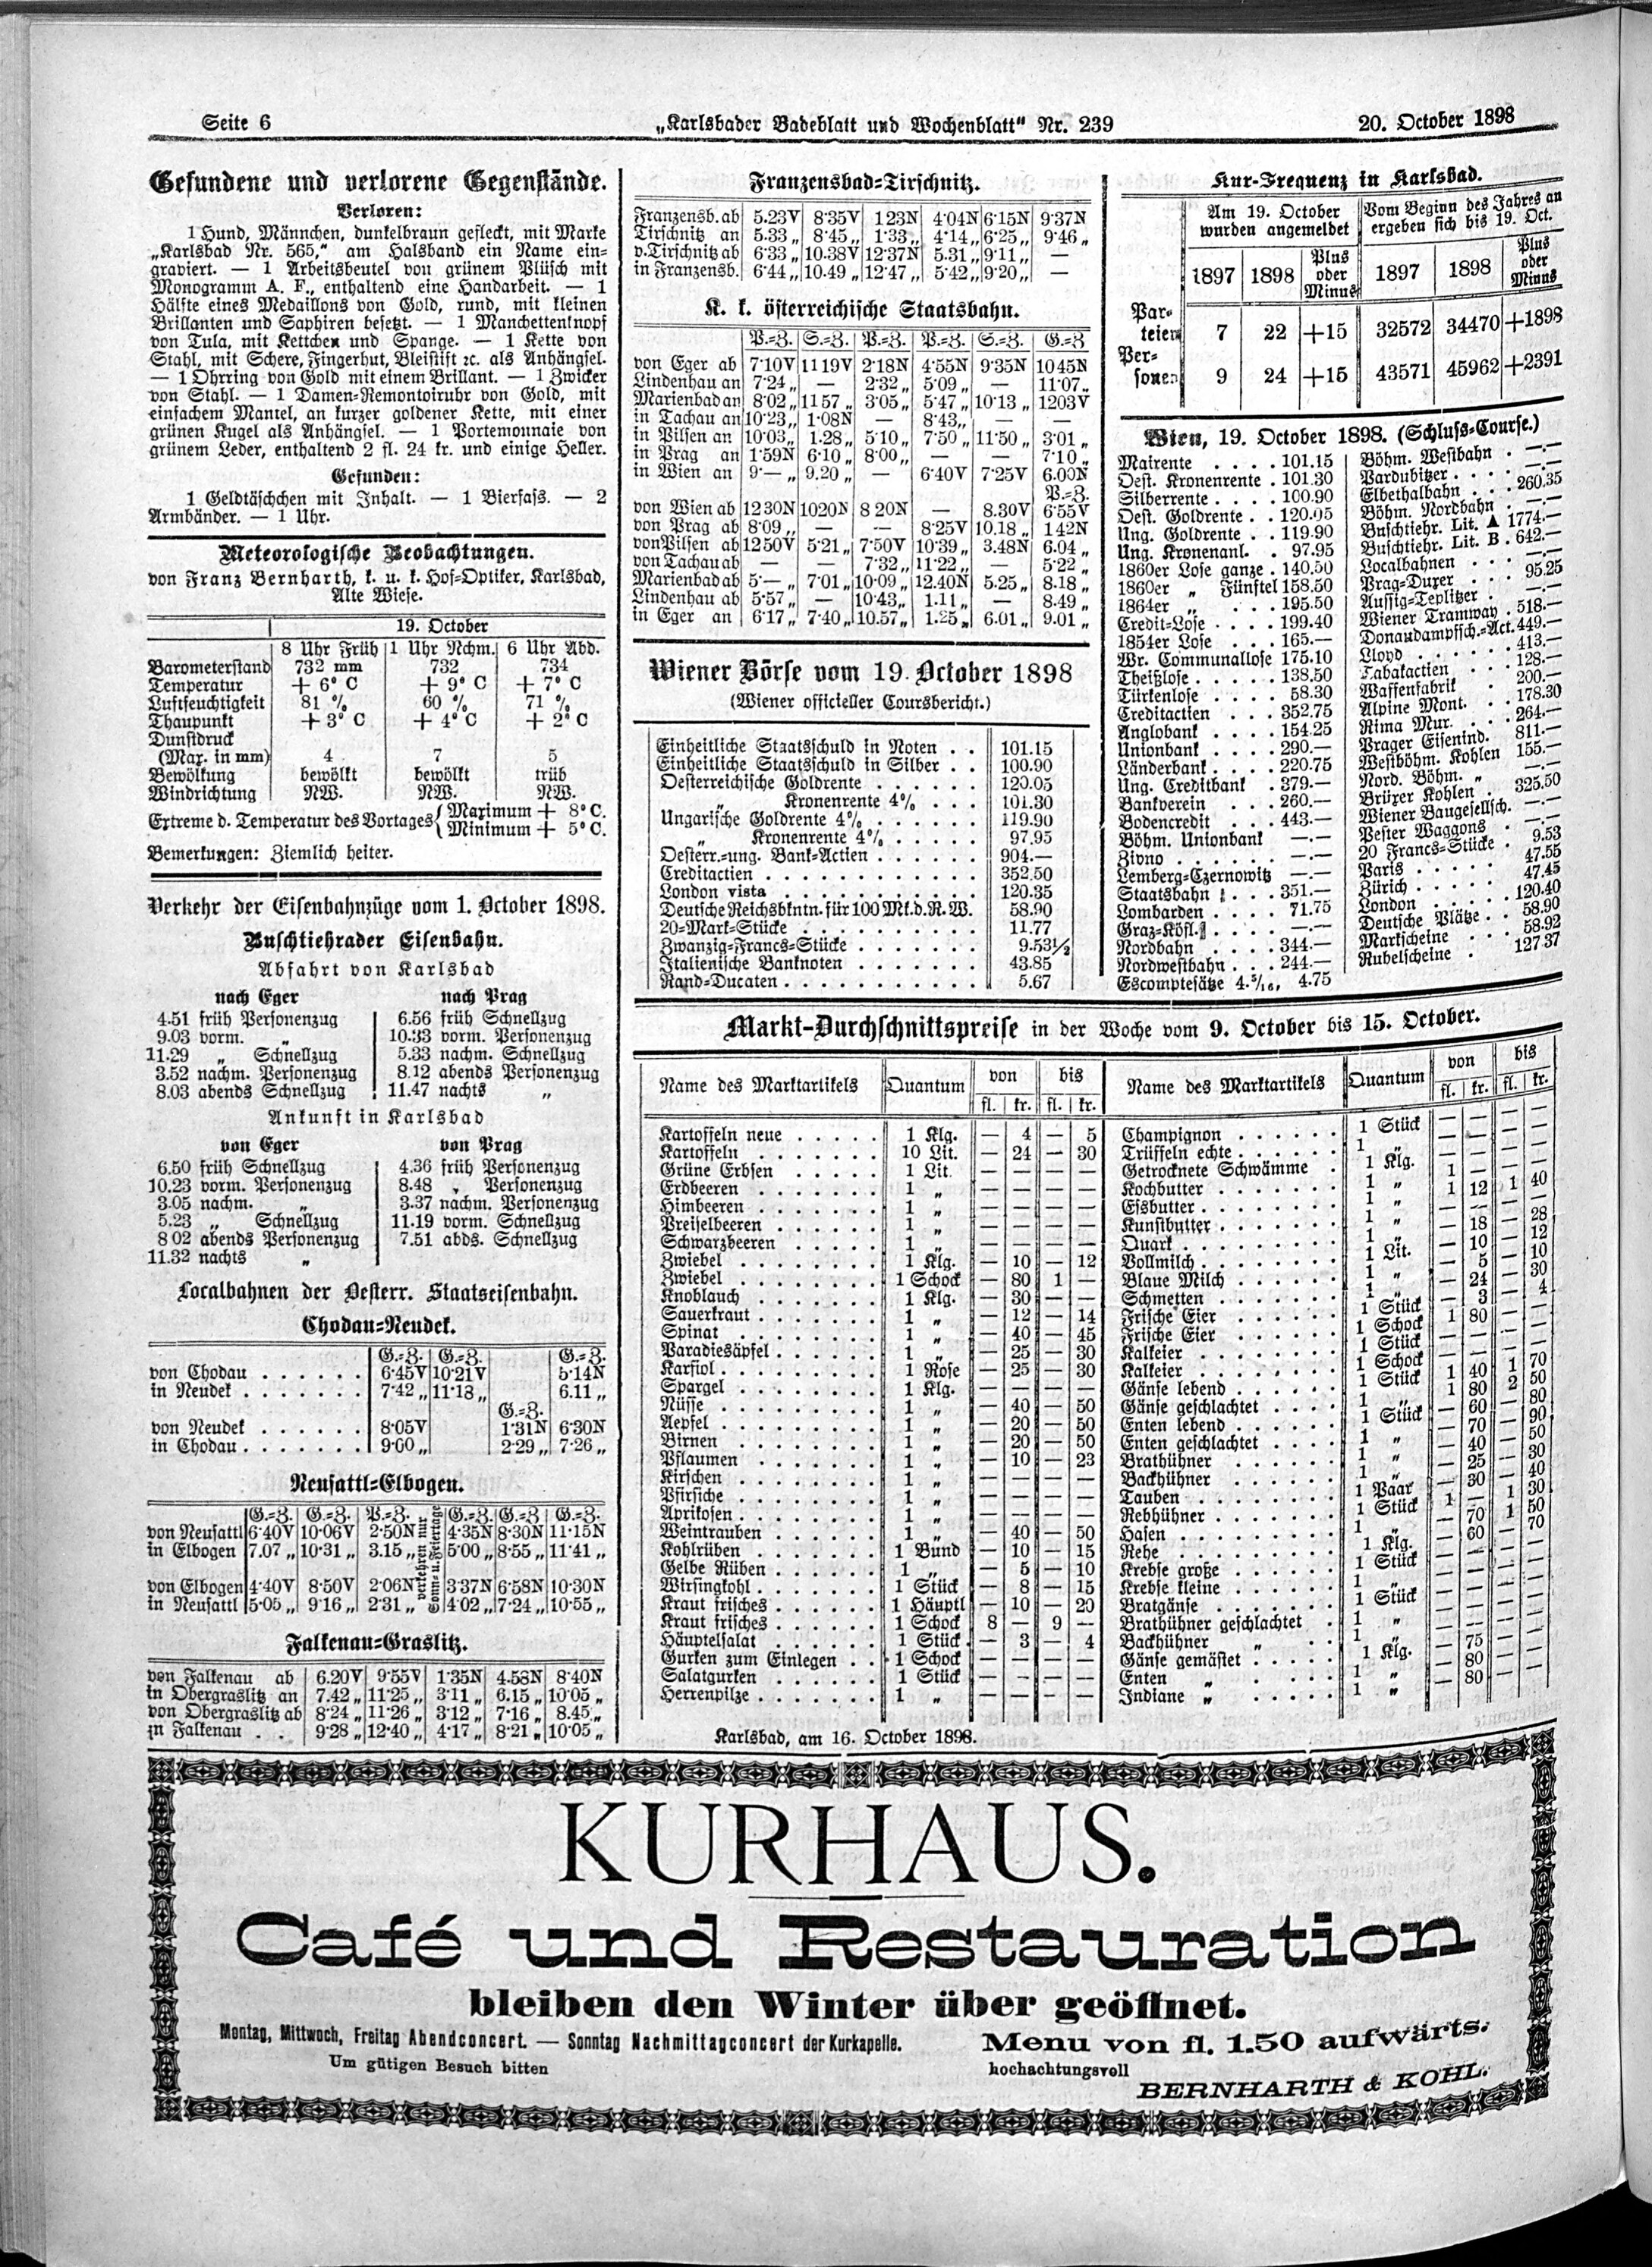 6. karlsbader-badeblatt-1898-10-20-n239_5460